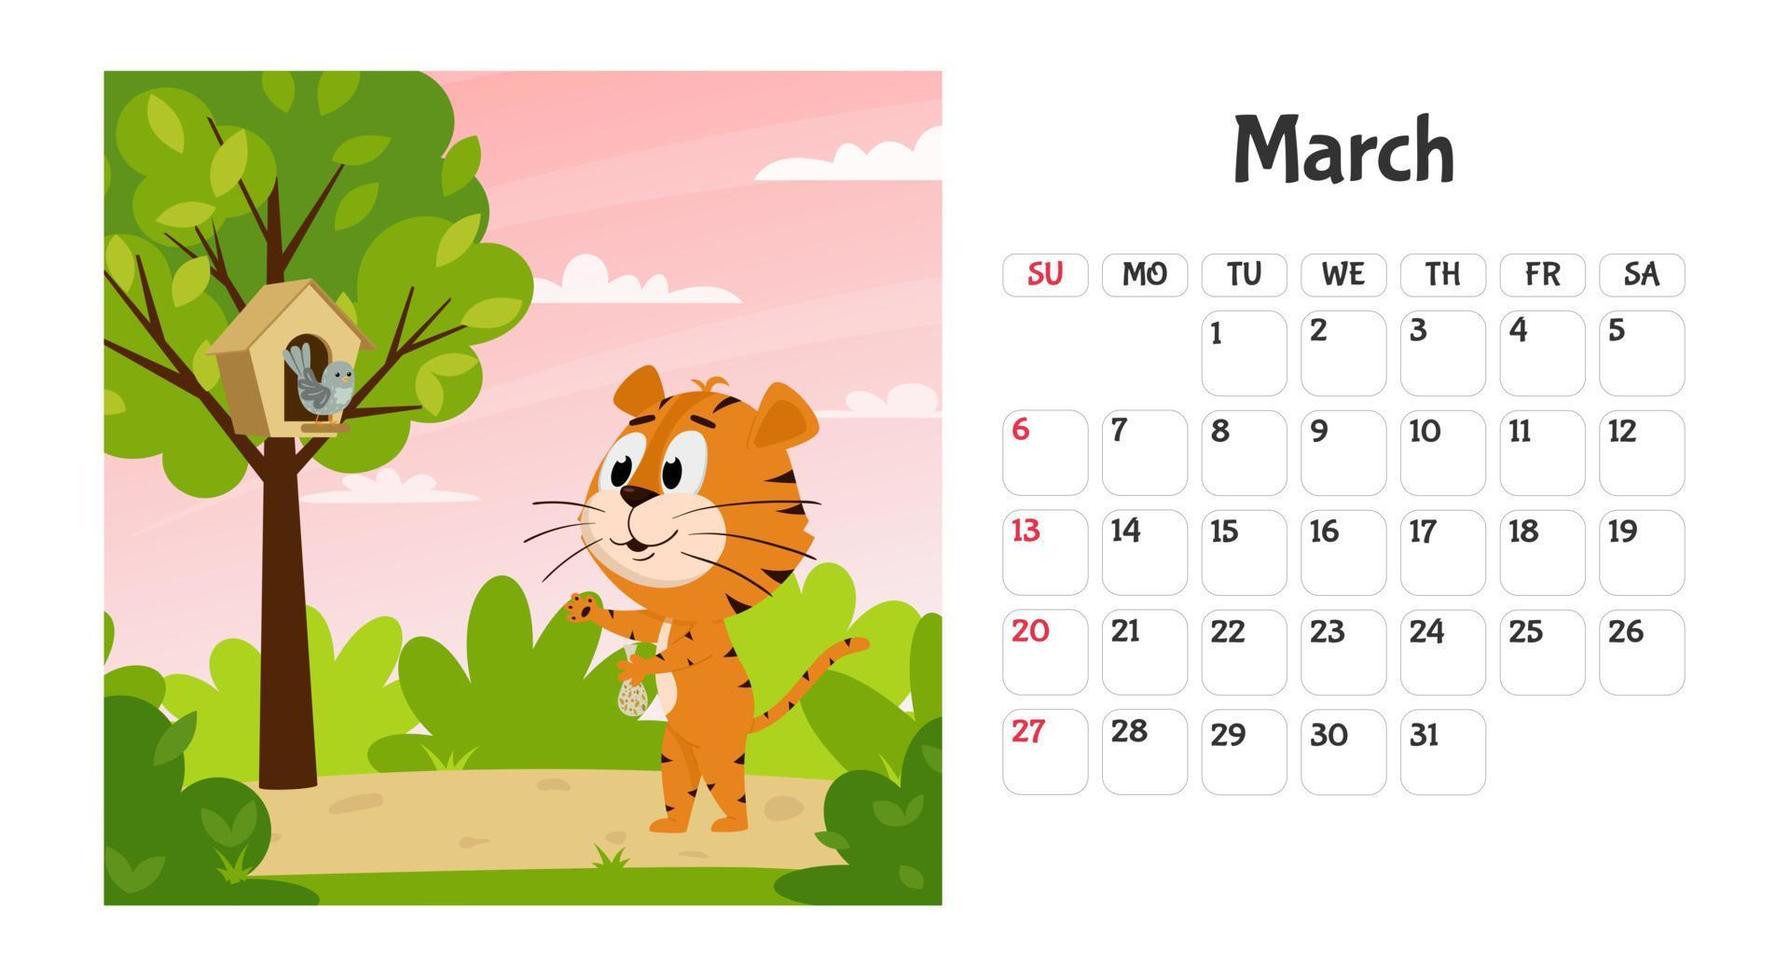 horizontale Desktop-Kalenderseitenvorlage für März 2022 mit einem Cartoon-Tiger-Symbol des chinesischen Jahres. die Woche beginnt am Sonntag. Ein Tiger füttert einen Vogel in einem Baum vektor